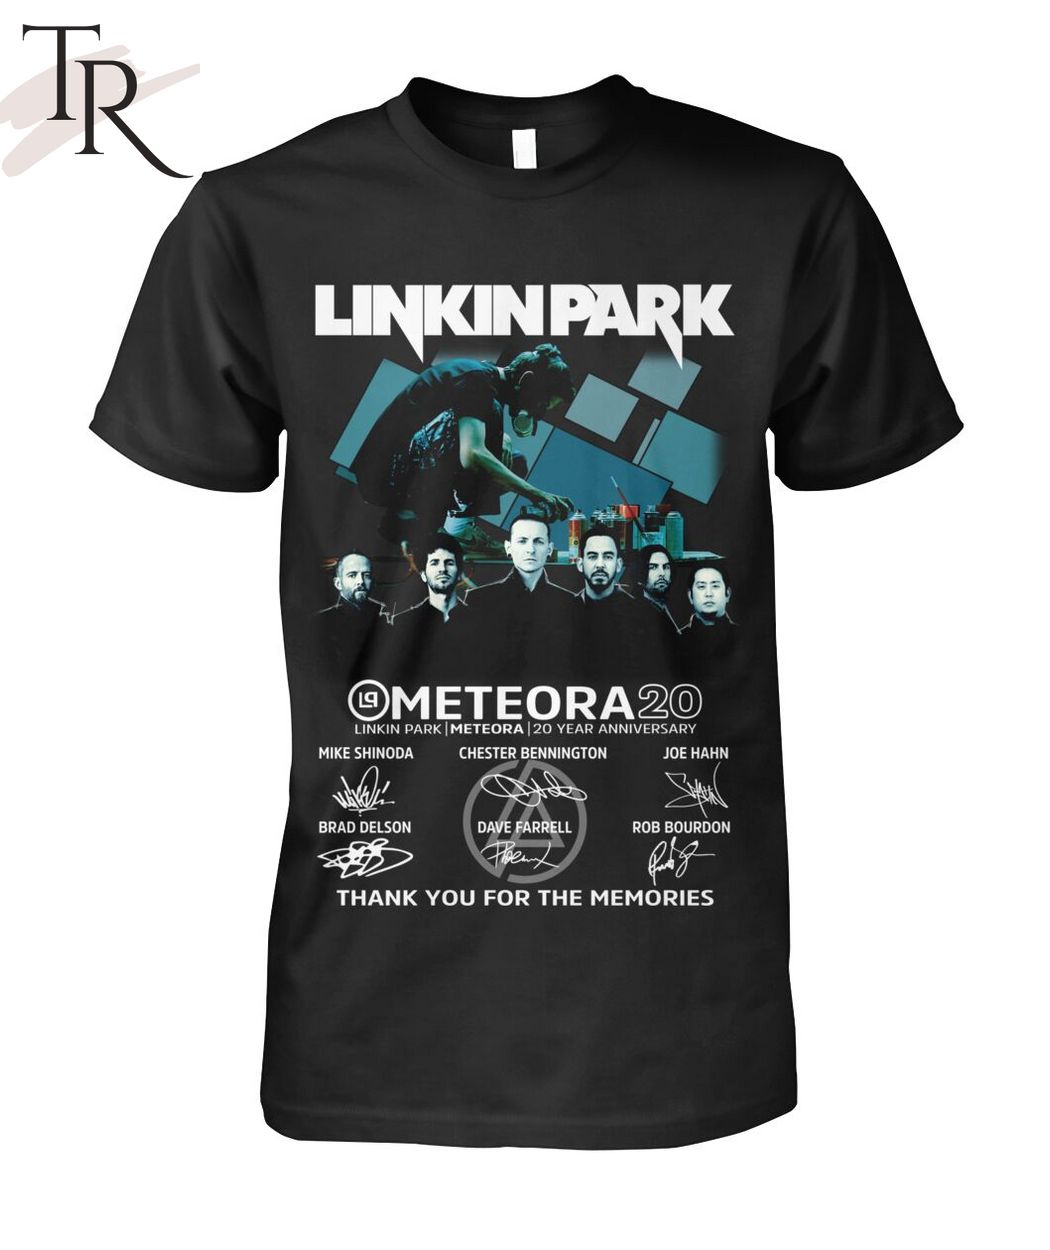 【専用】リンキンパーク03年 日本公演購入 オフィシャルTシャツコメント失礼致します